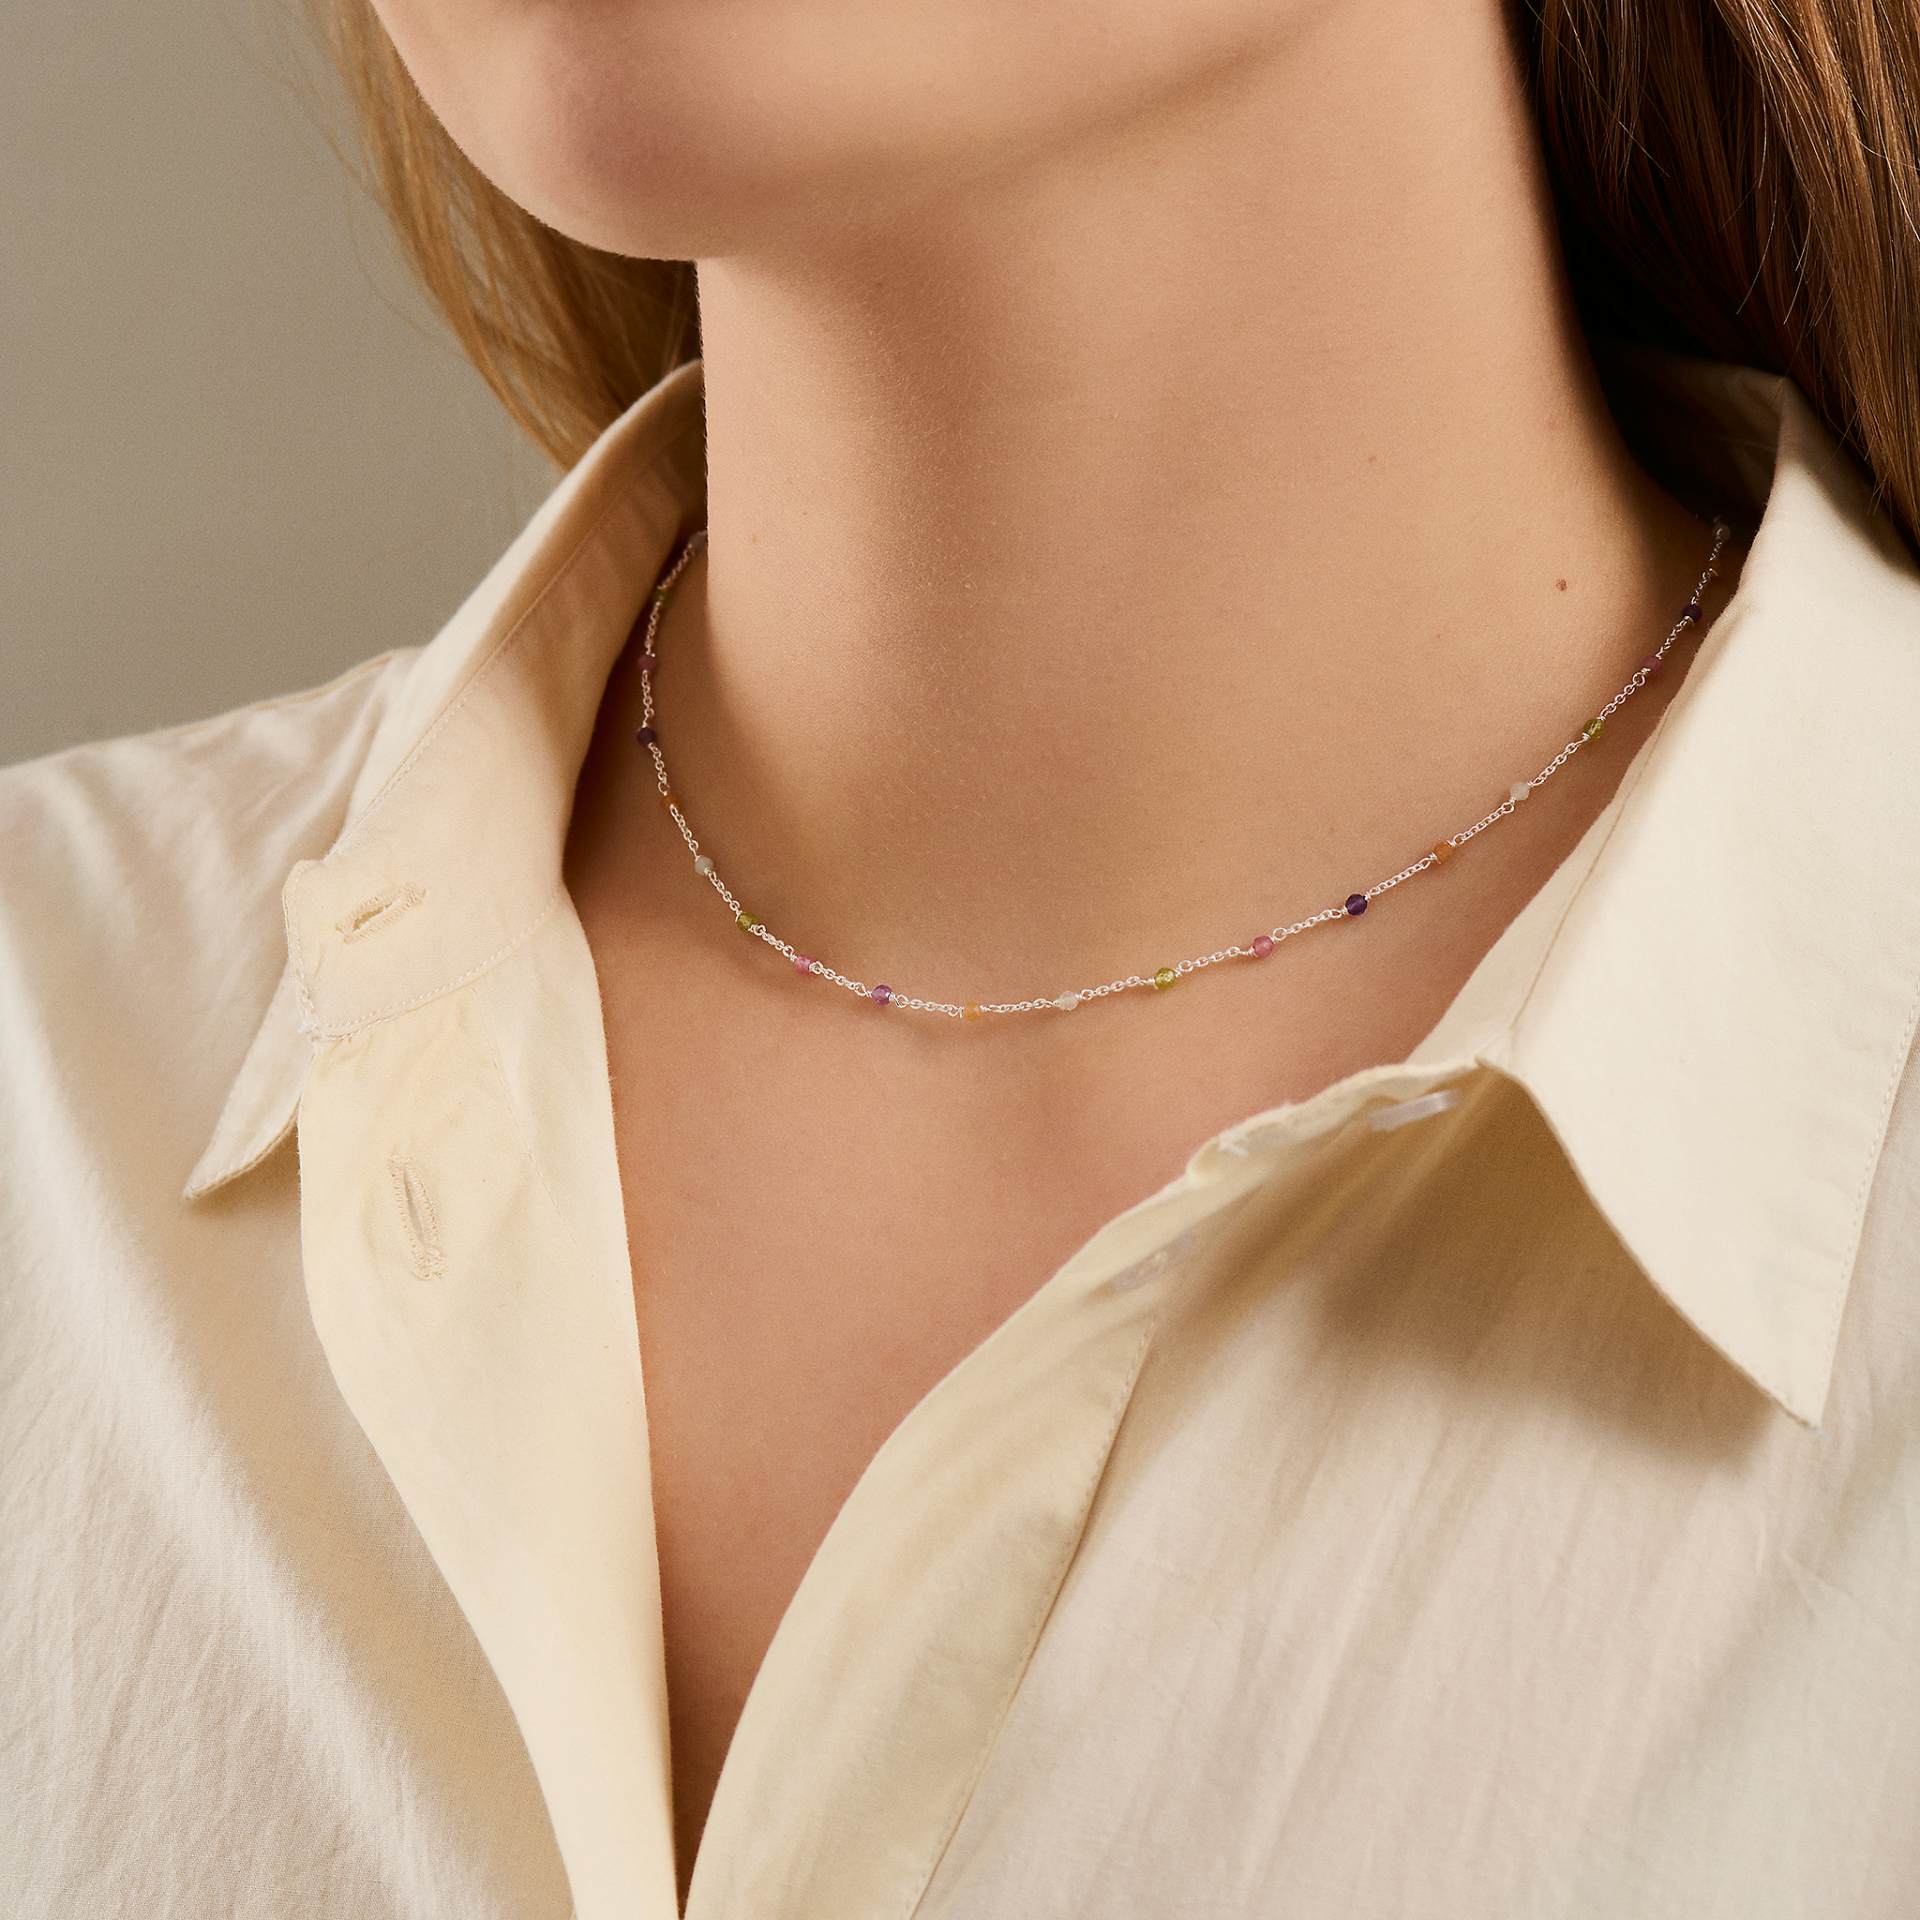 Rainbow Necklace von Pernille Corydon in Vergoldet-Silber Sterling 925